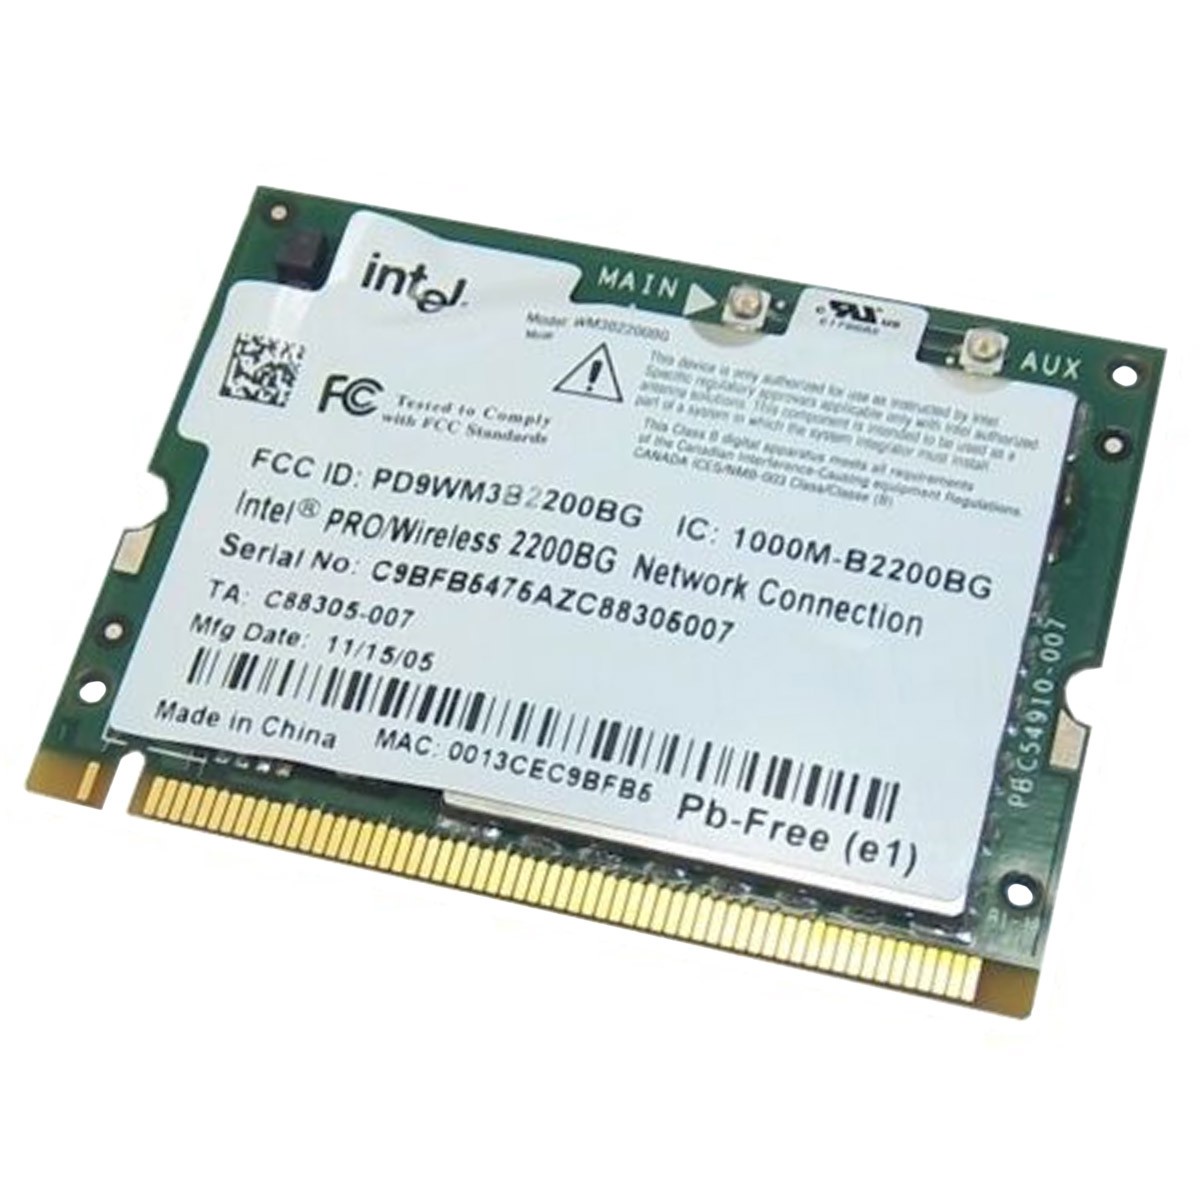 Mini-Carte Wifi Dell DW1520 BCM943224HMS 0KVCX1 KVCX1 PCIe 802.11bgn WLAN -  MonsieurCyberMan